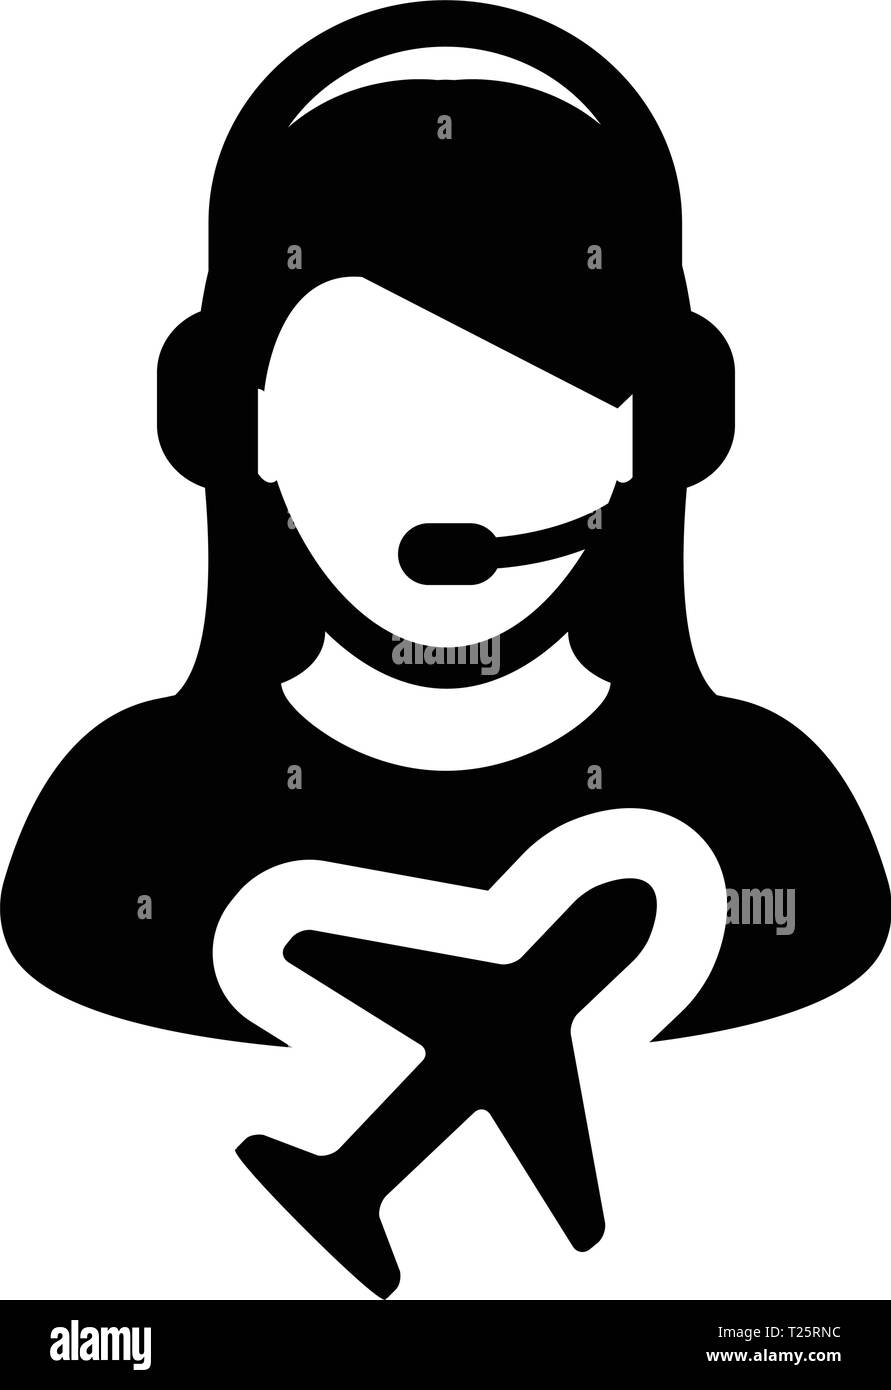 Flug Kundenservice Symbol Vektor weibliche Person Profil Symbol für Reise  und Urlaub Support Helpline in Glyph Piktogramm Abbildung  Stock-Vektorgrafik - Alamy